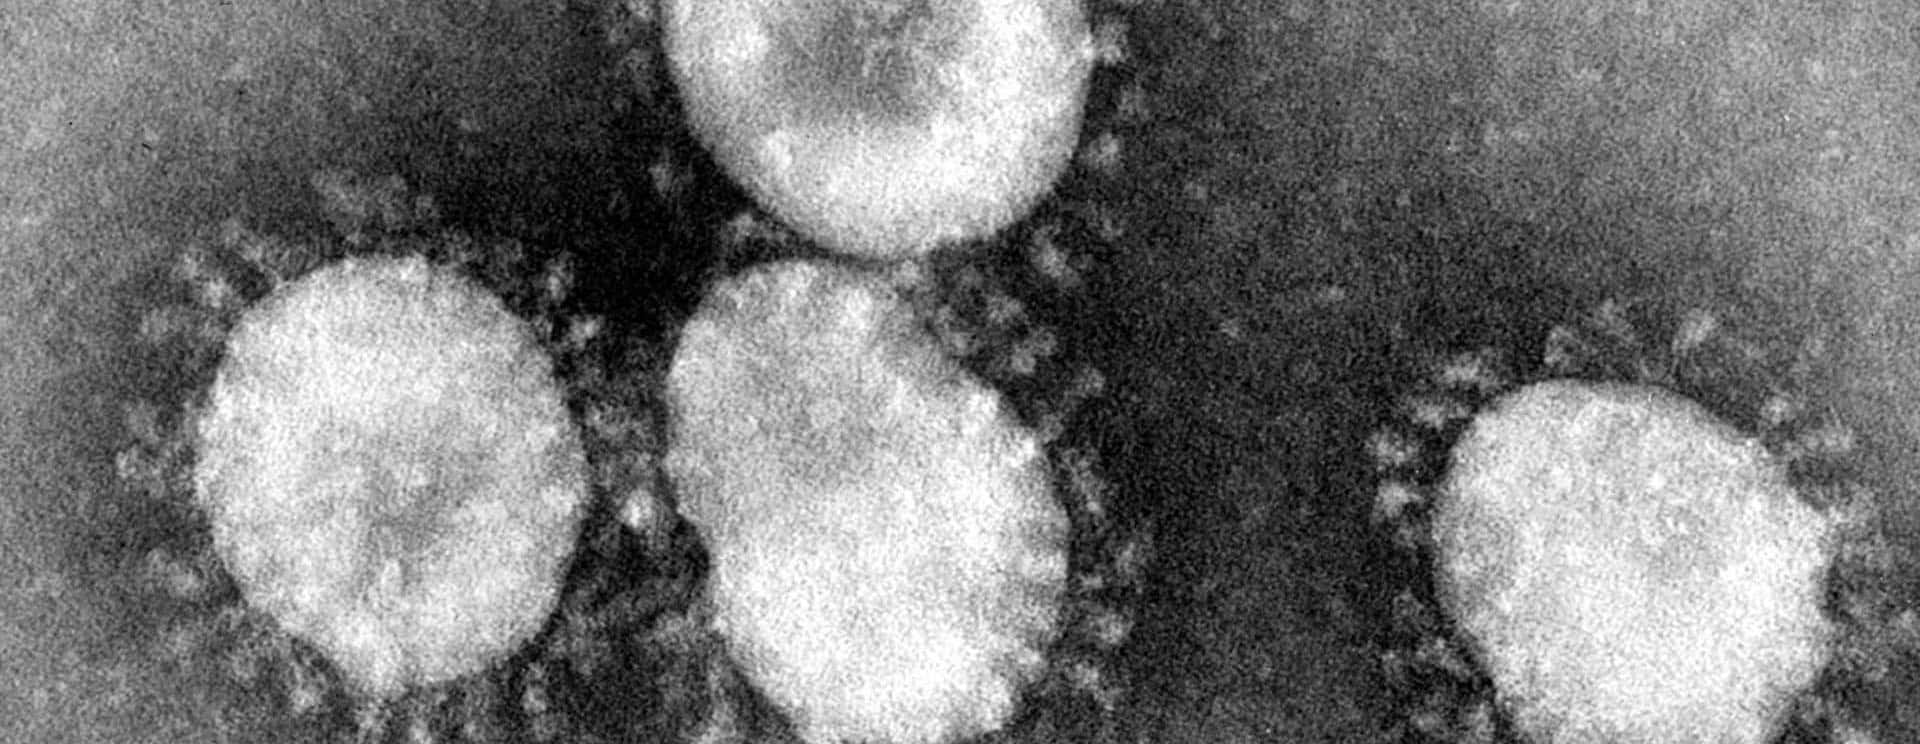 coronaviruses-jpg-132